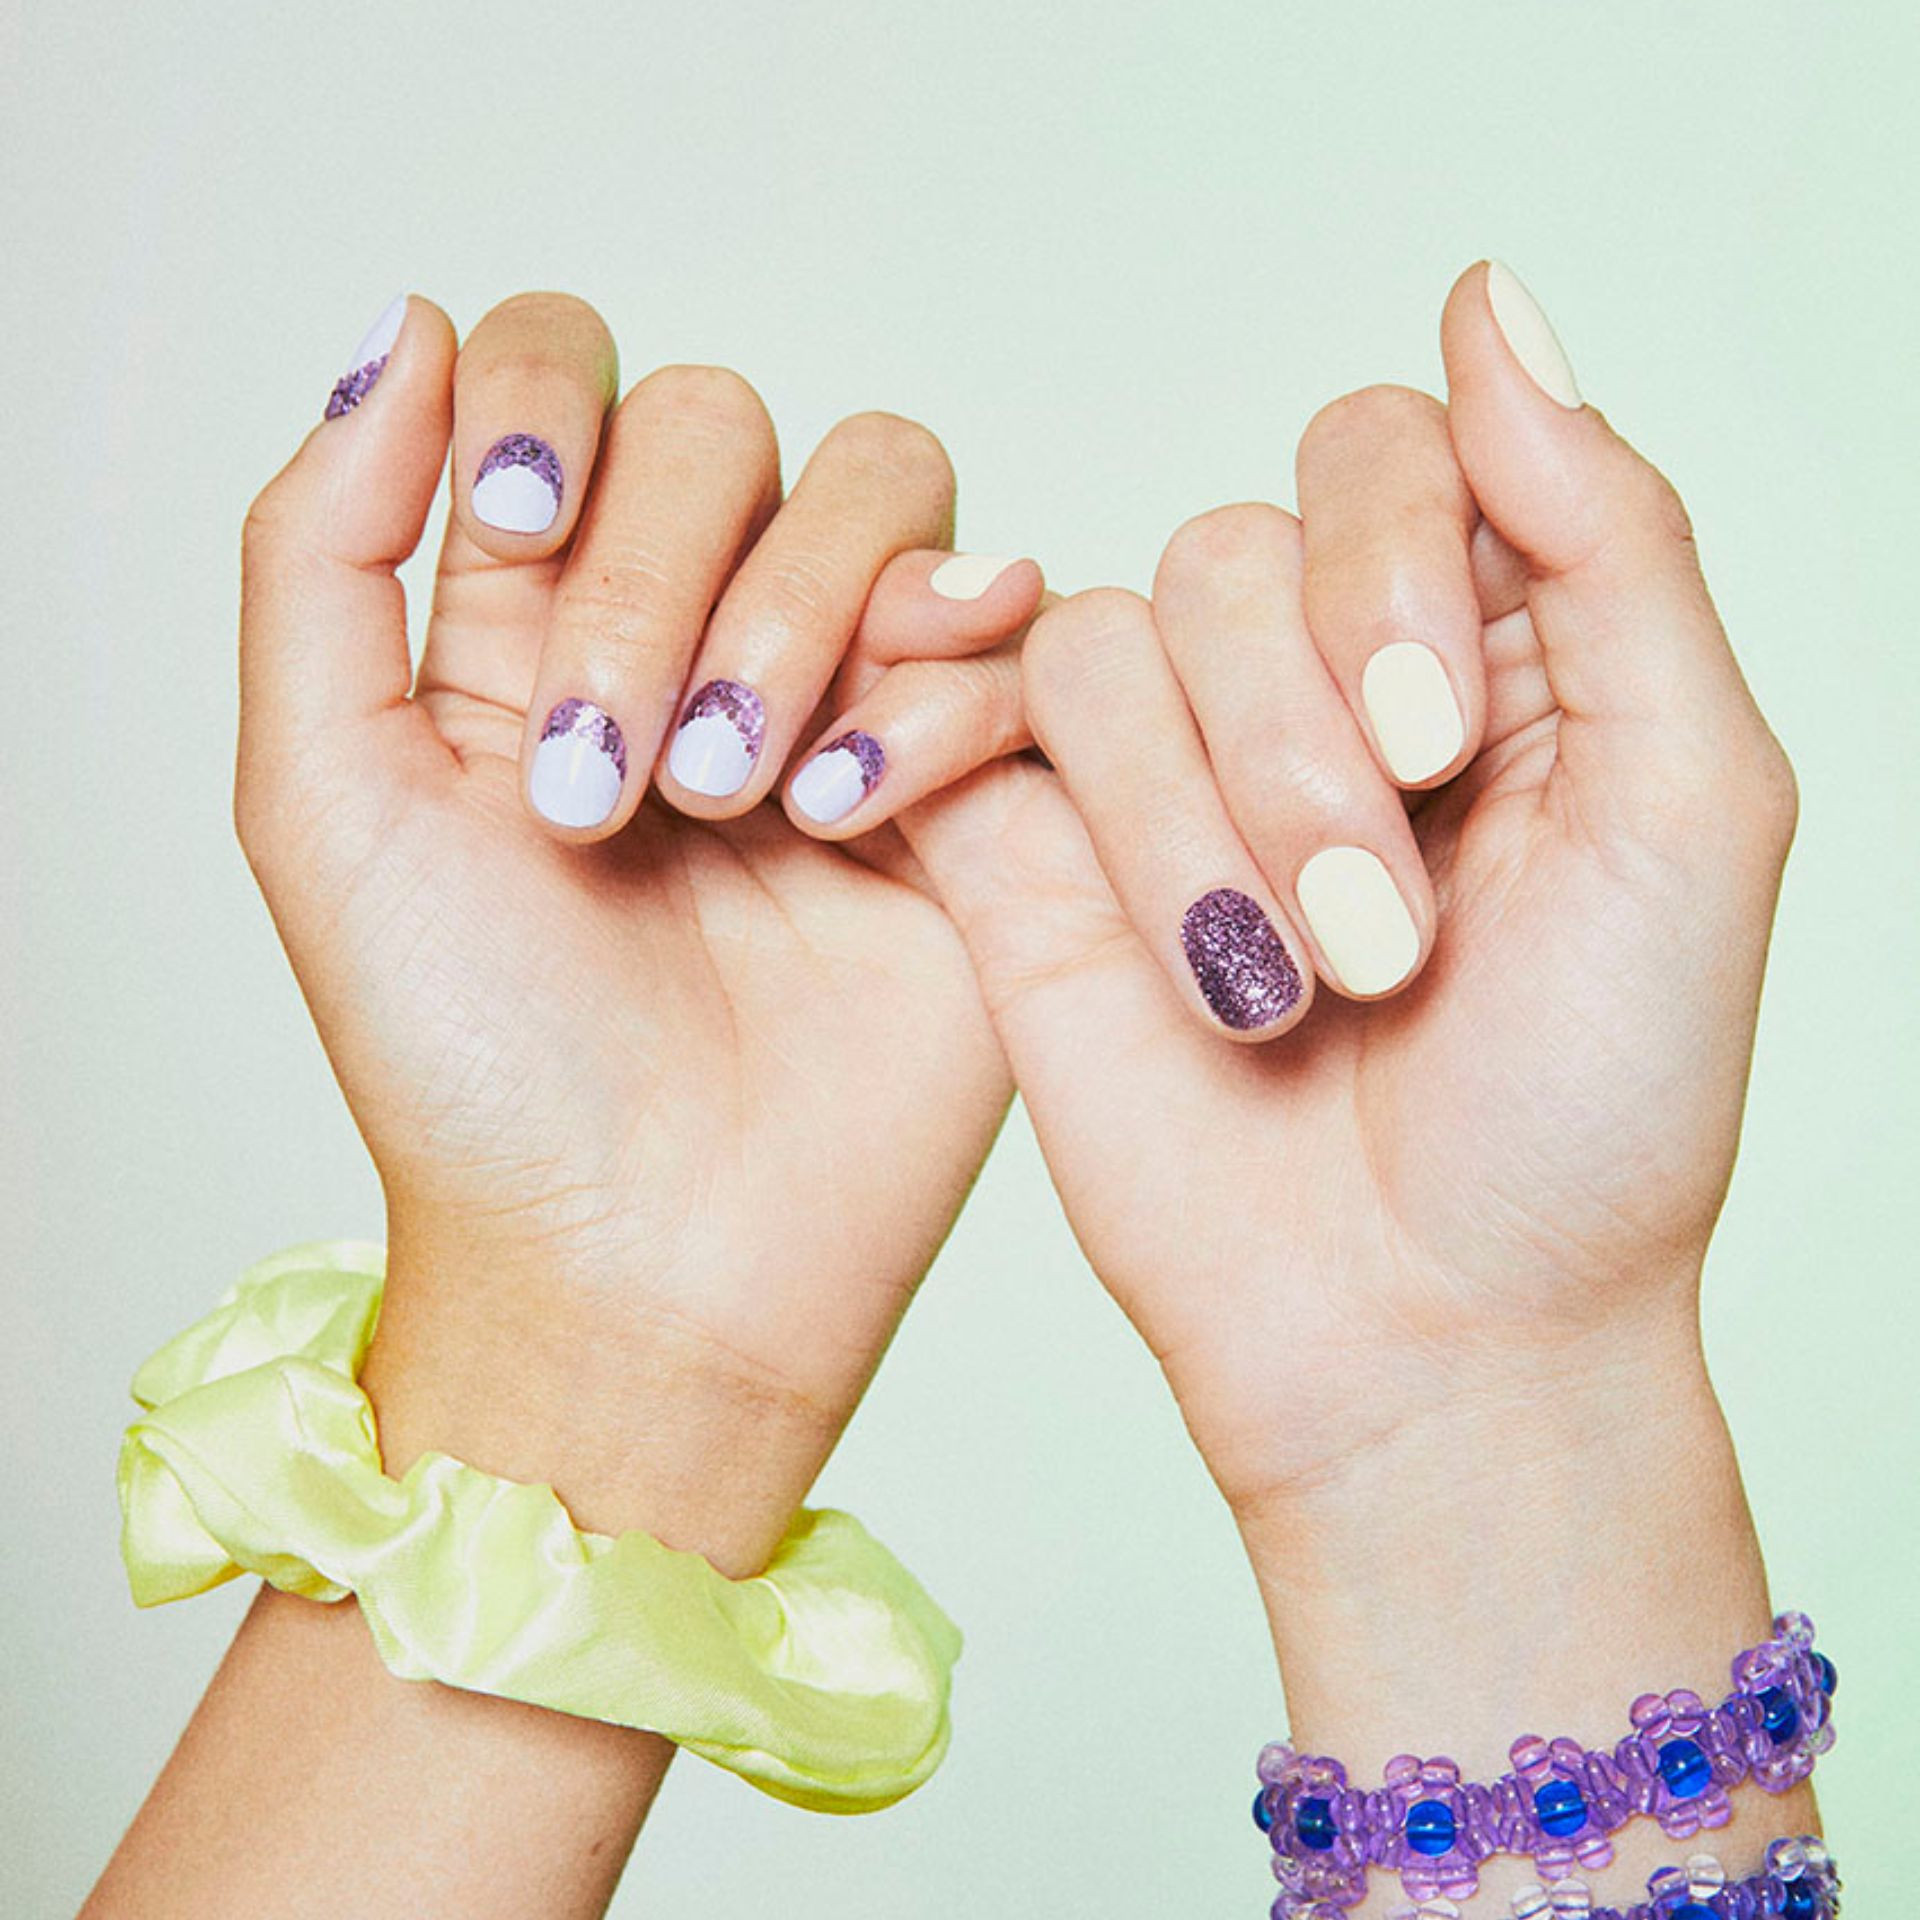 Glitter manicure with yellow pastel nail polish and small purple glitters